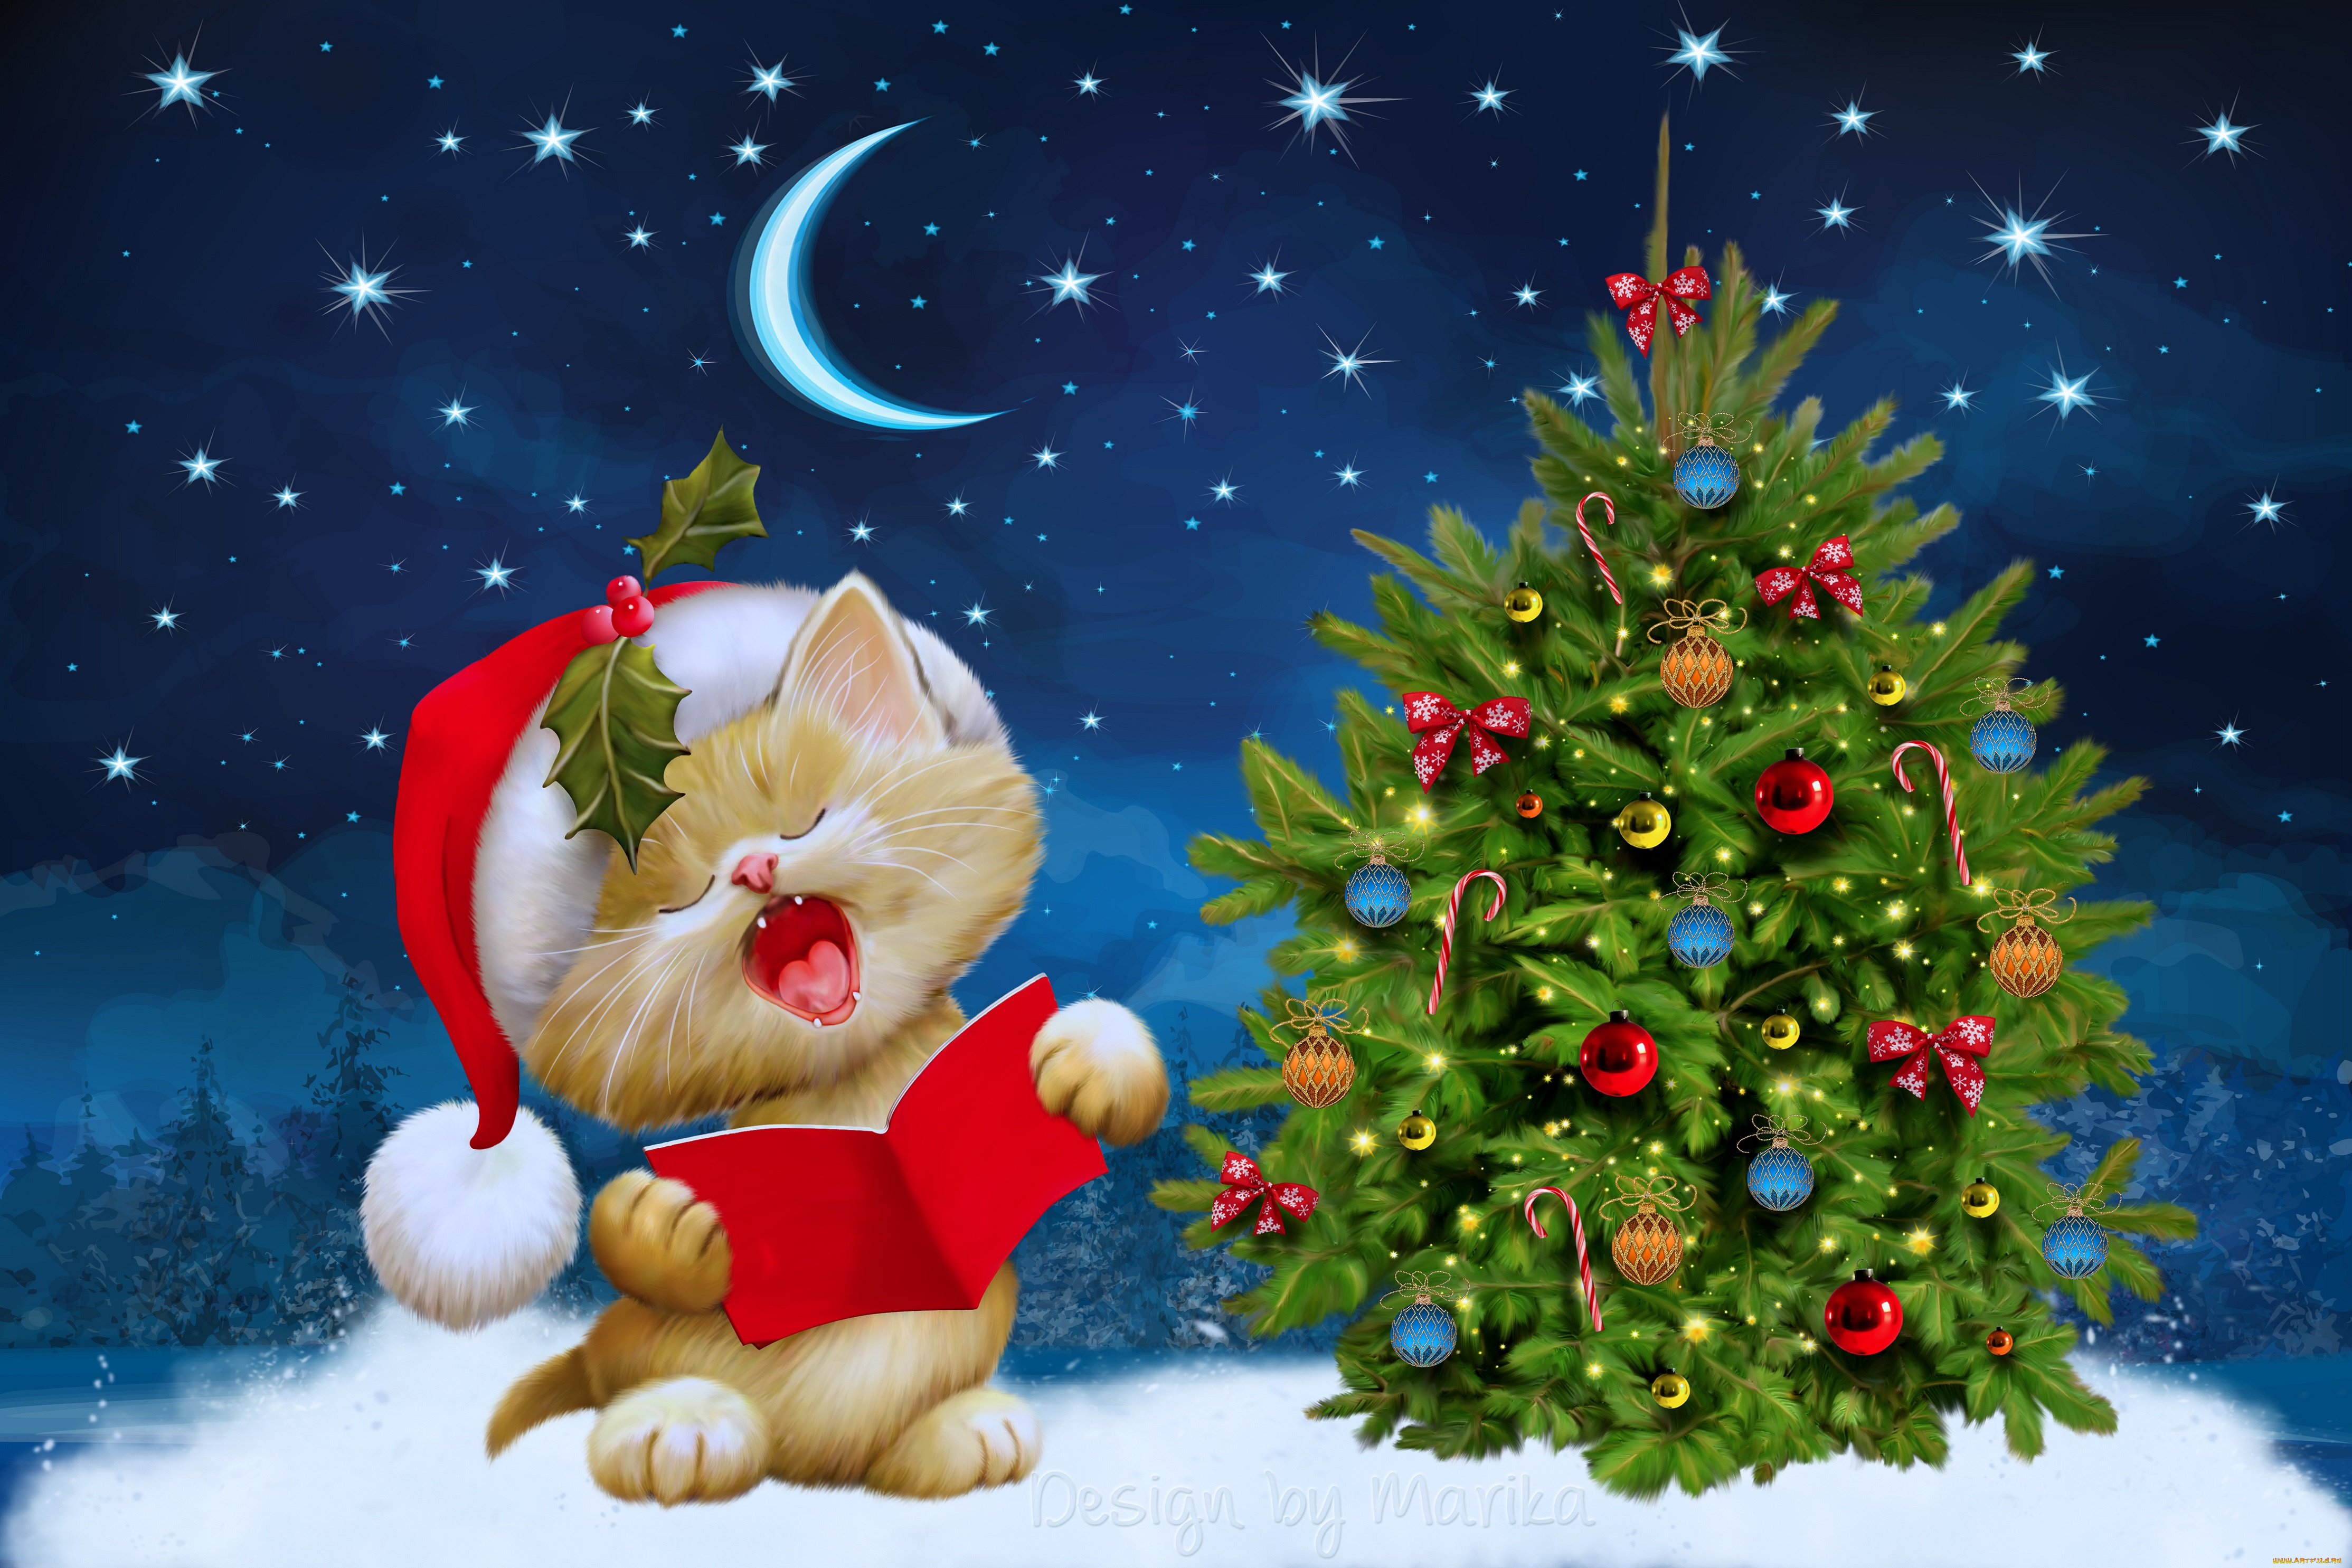 праздничные, рисованные, сочельник, kitten, луна, tree, night, christmas, merry, новый, год, design, by, marika, рождество, winter, snow, santa, ночь, елка, зима, снег, звезды, котенок